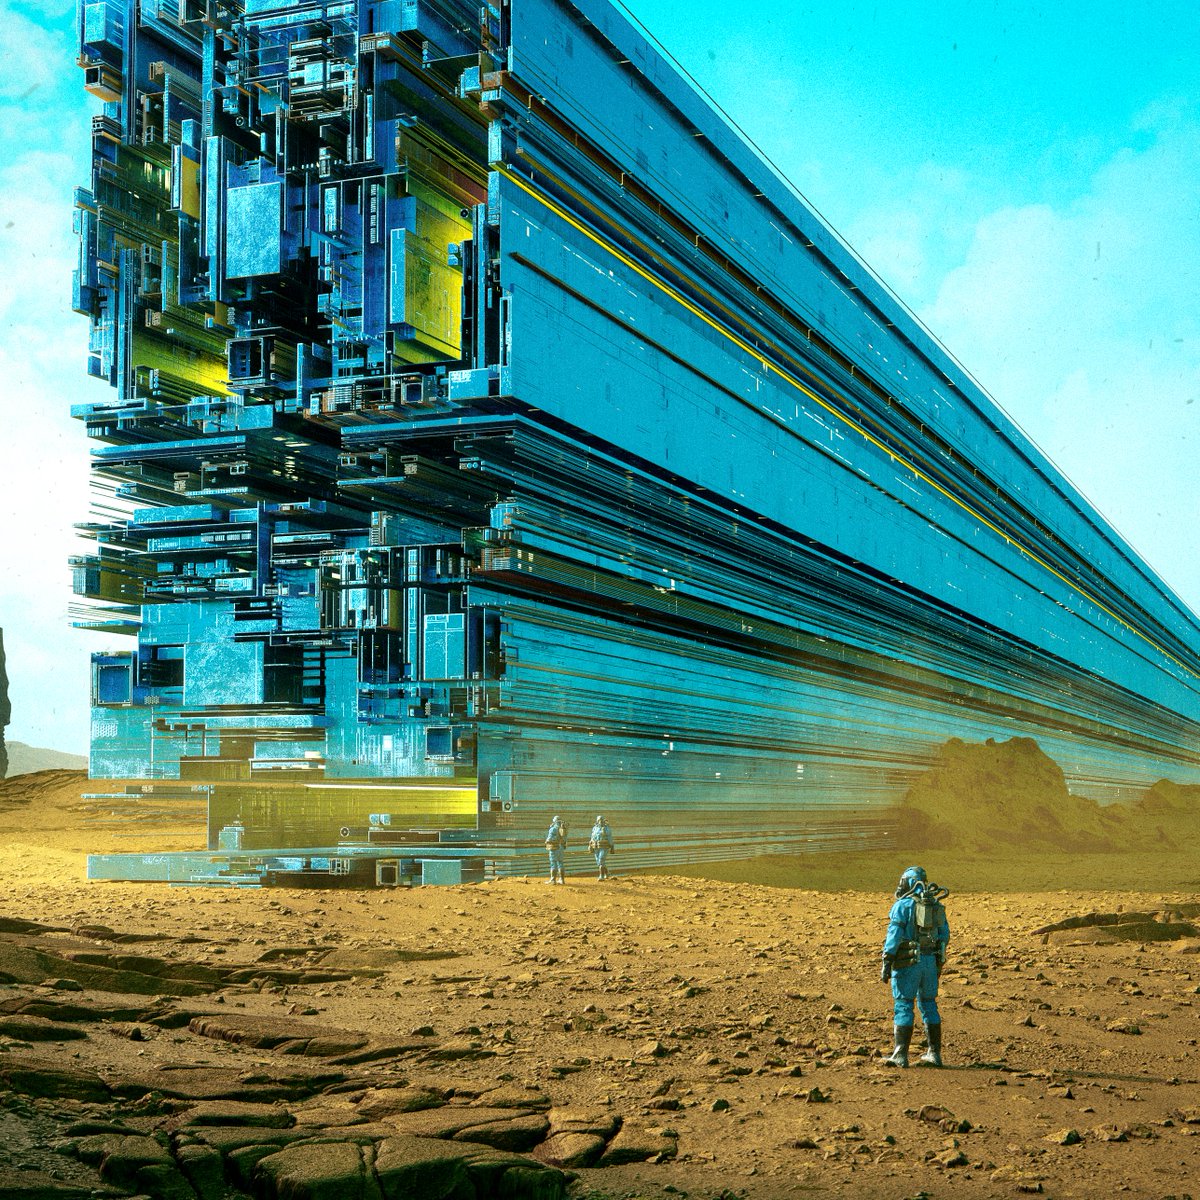 Liam Pannier
#futuristic #scifiart #Fantastico #explore #Dimensions